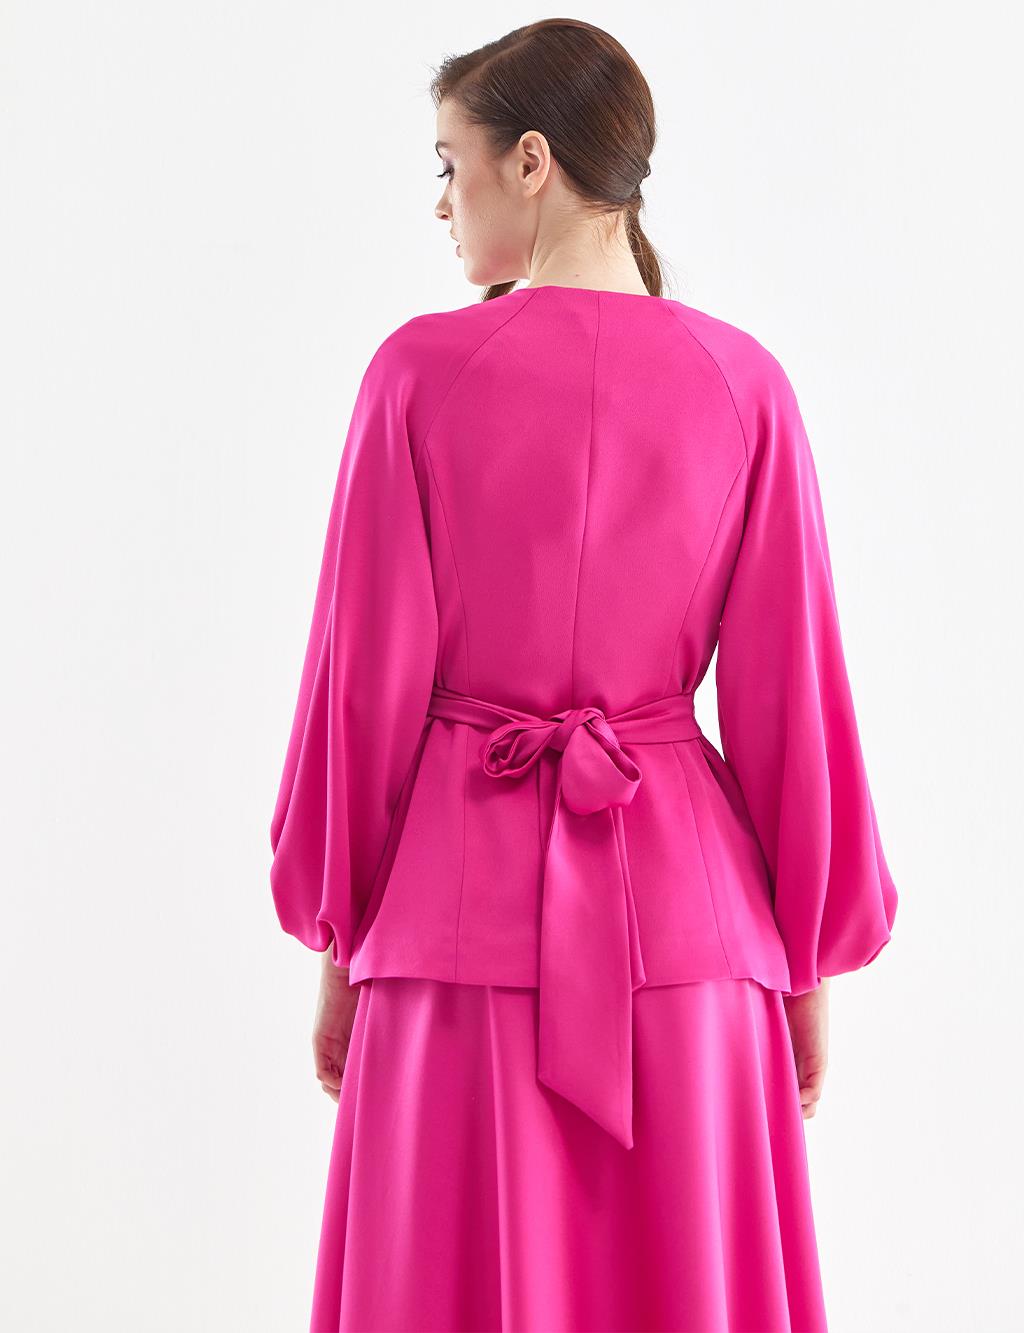 Balloon Sleeve Double Breasted Blouse Skirt Suit Fuchsia